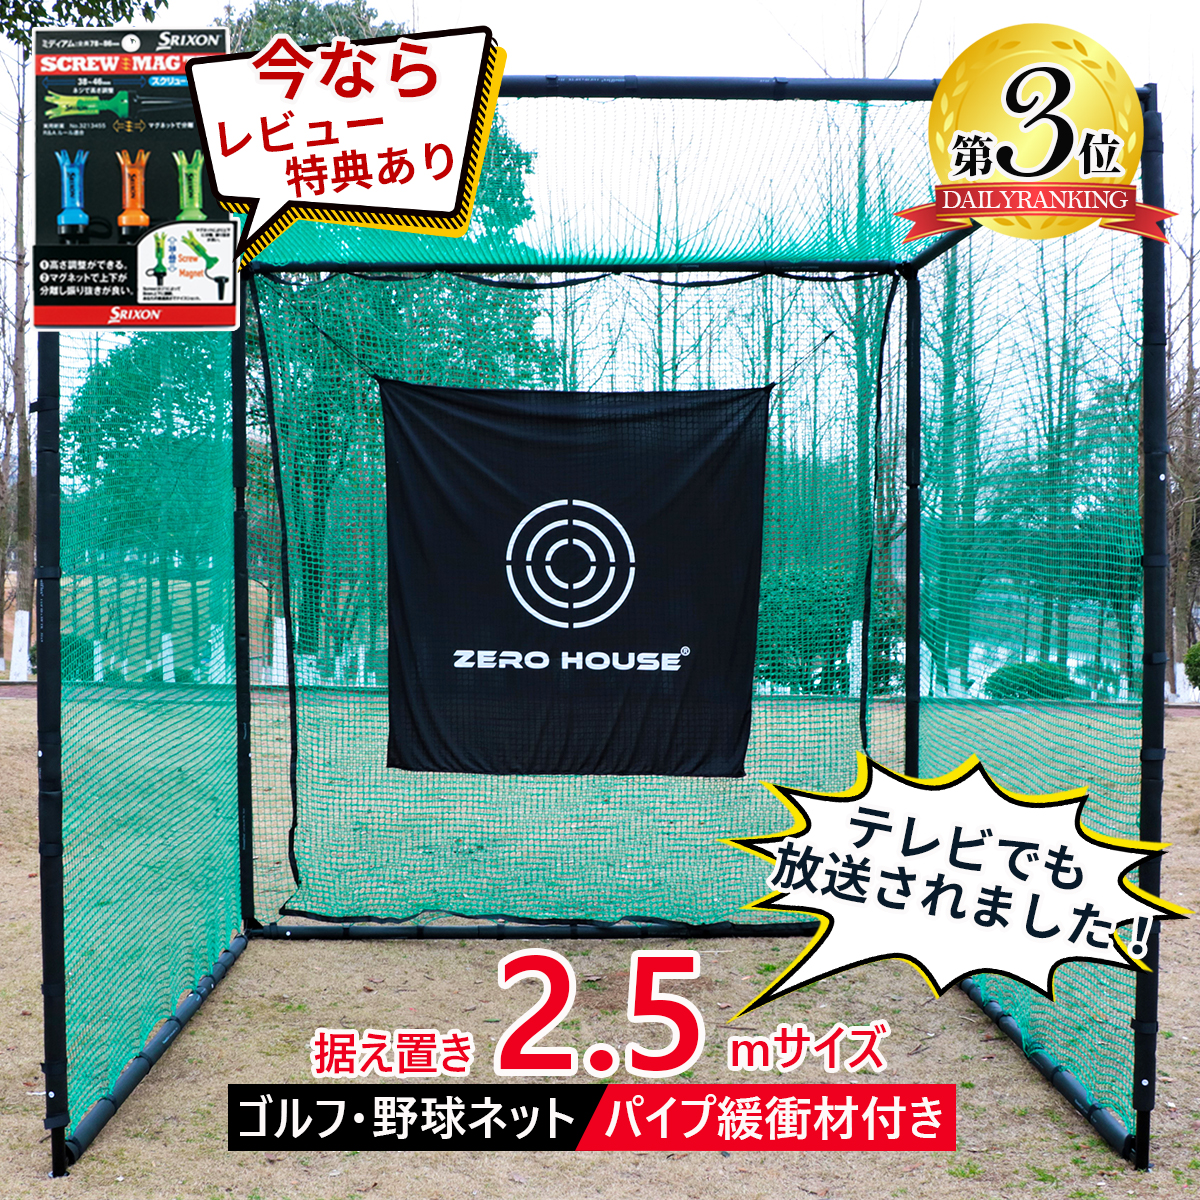 【レビュー特典付き】ゴルフ練習ネット 2.5M×2.5M×2.5M 大型 防球 